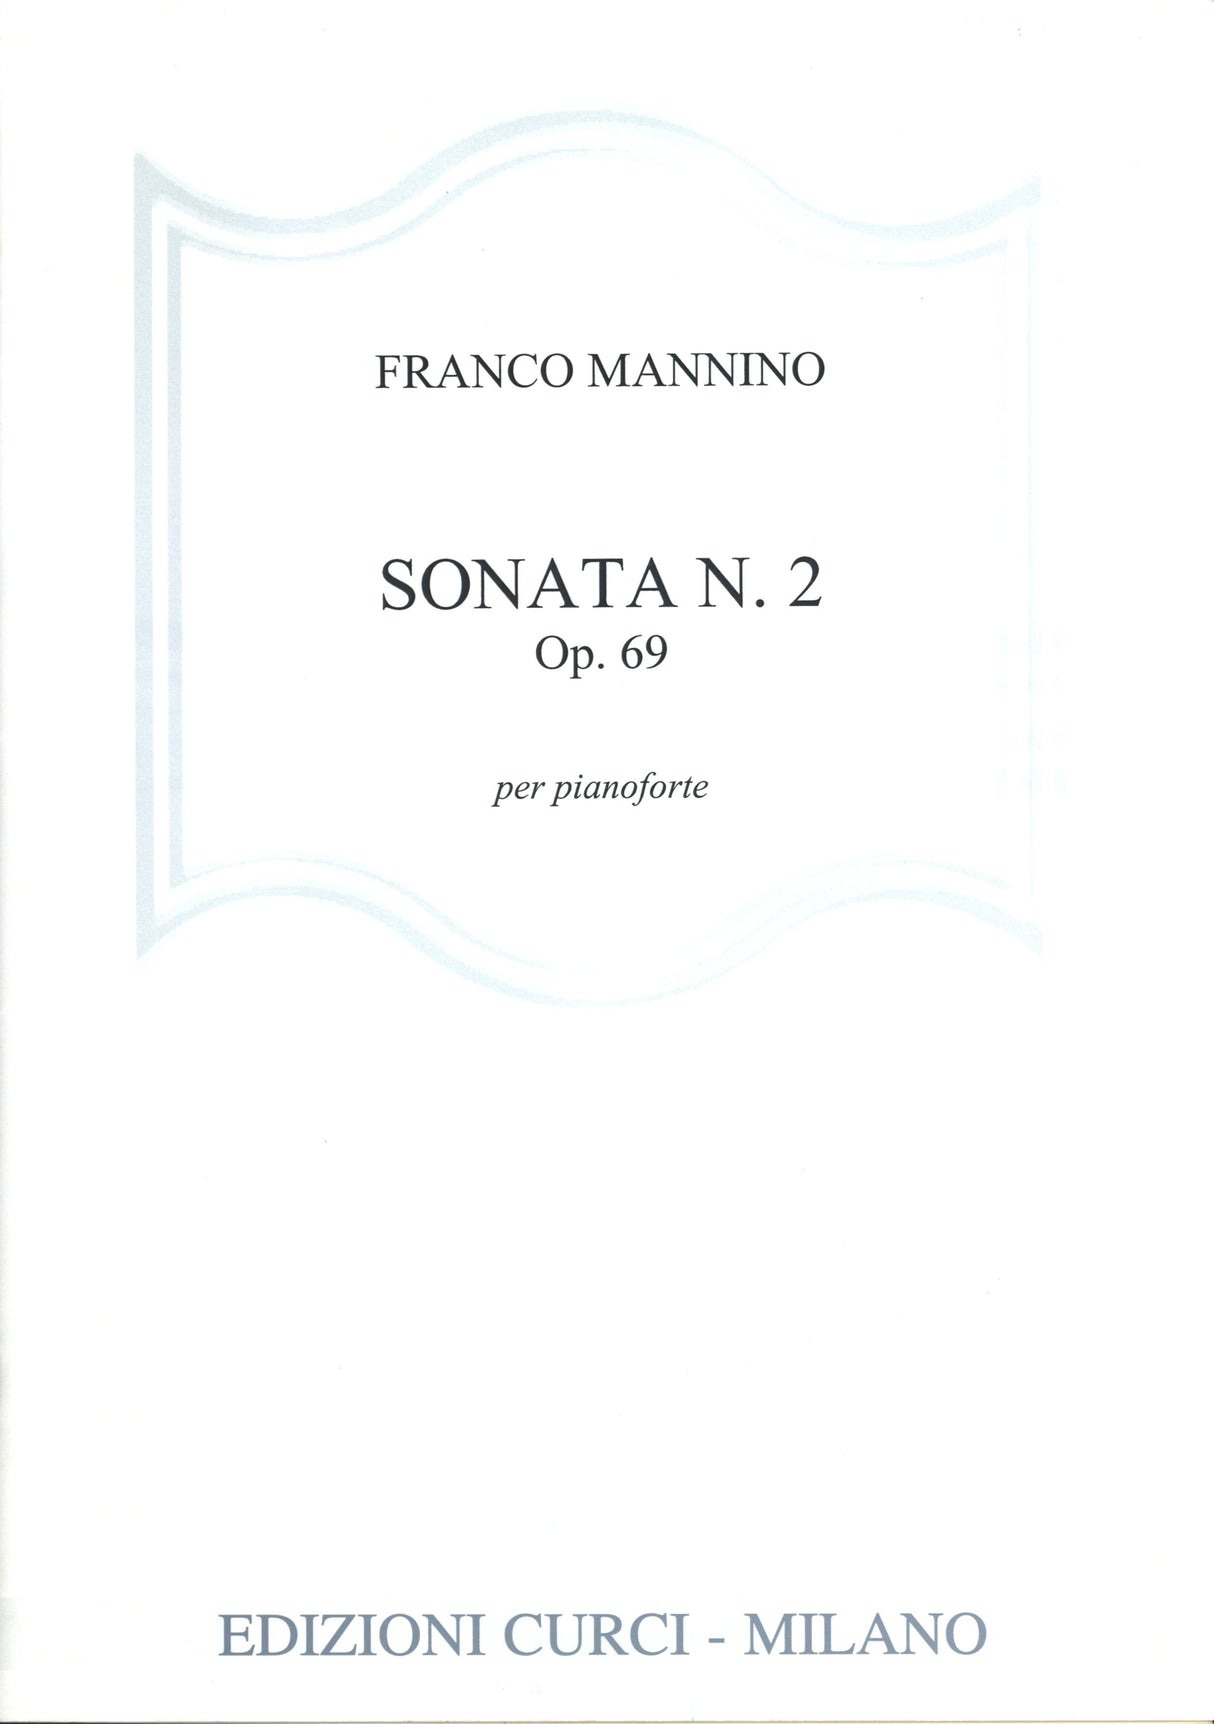 Mannino: Piano Sonata No. 2, Op. 69